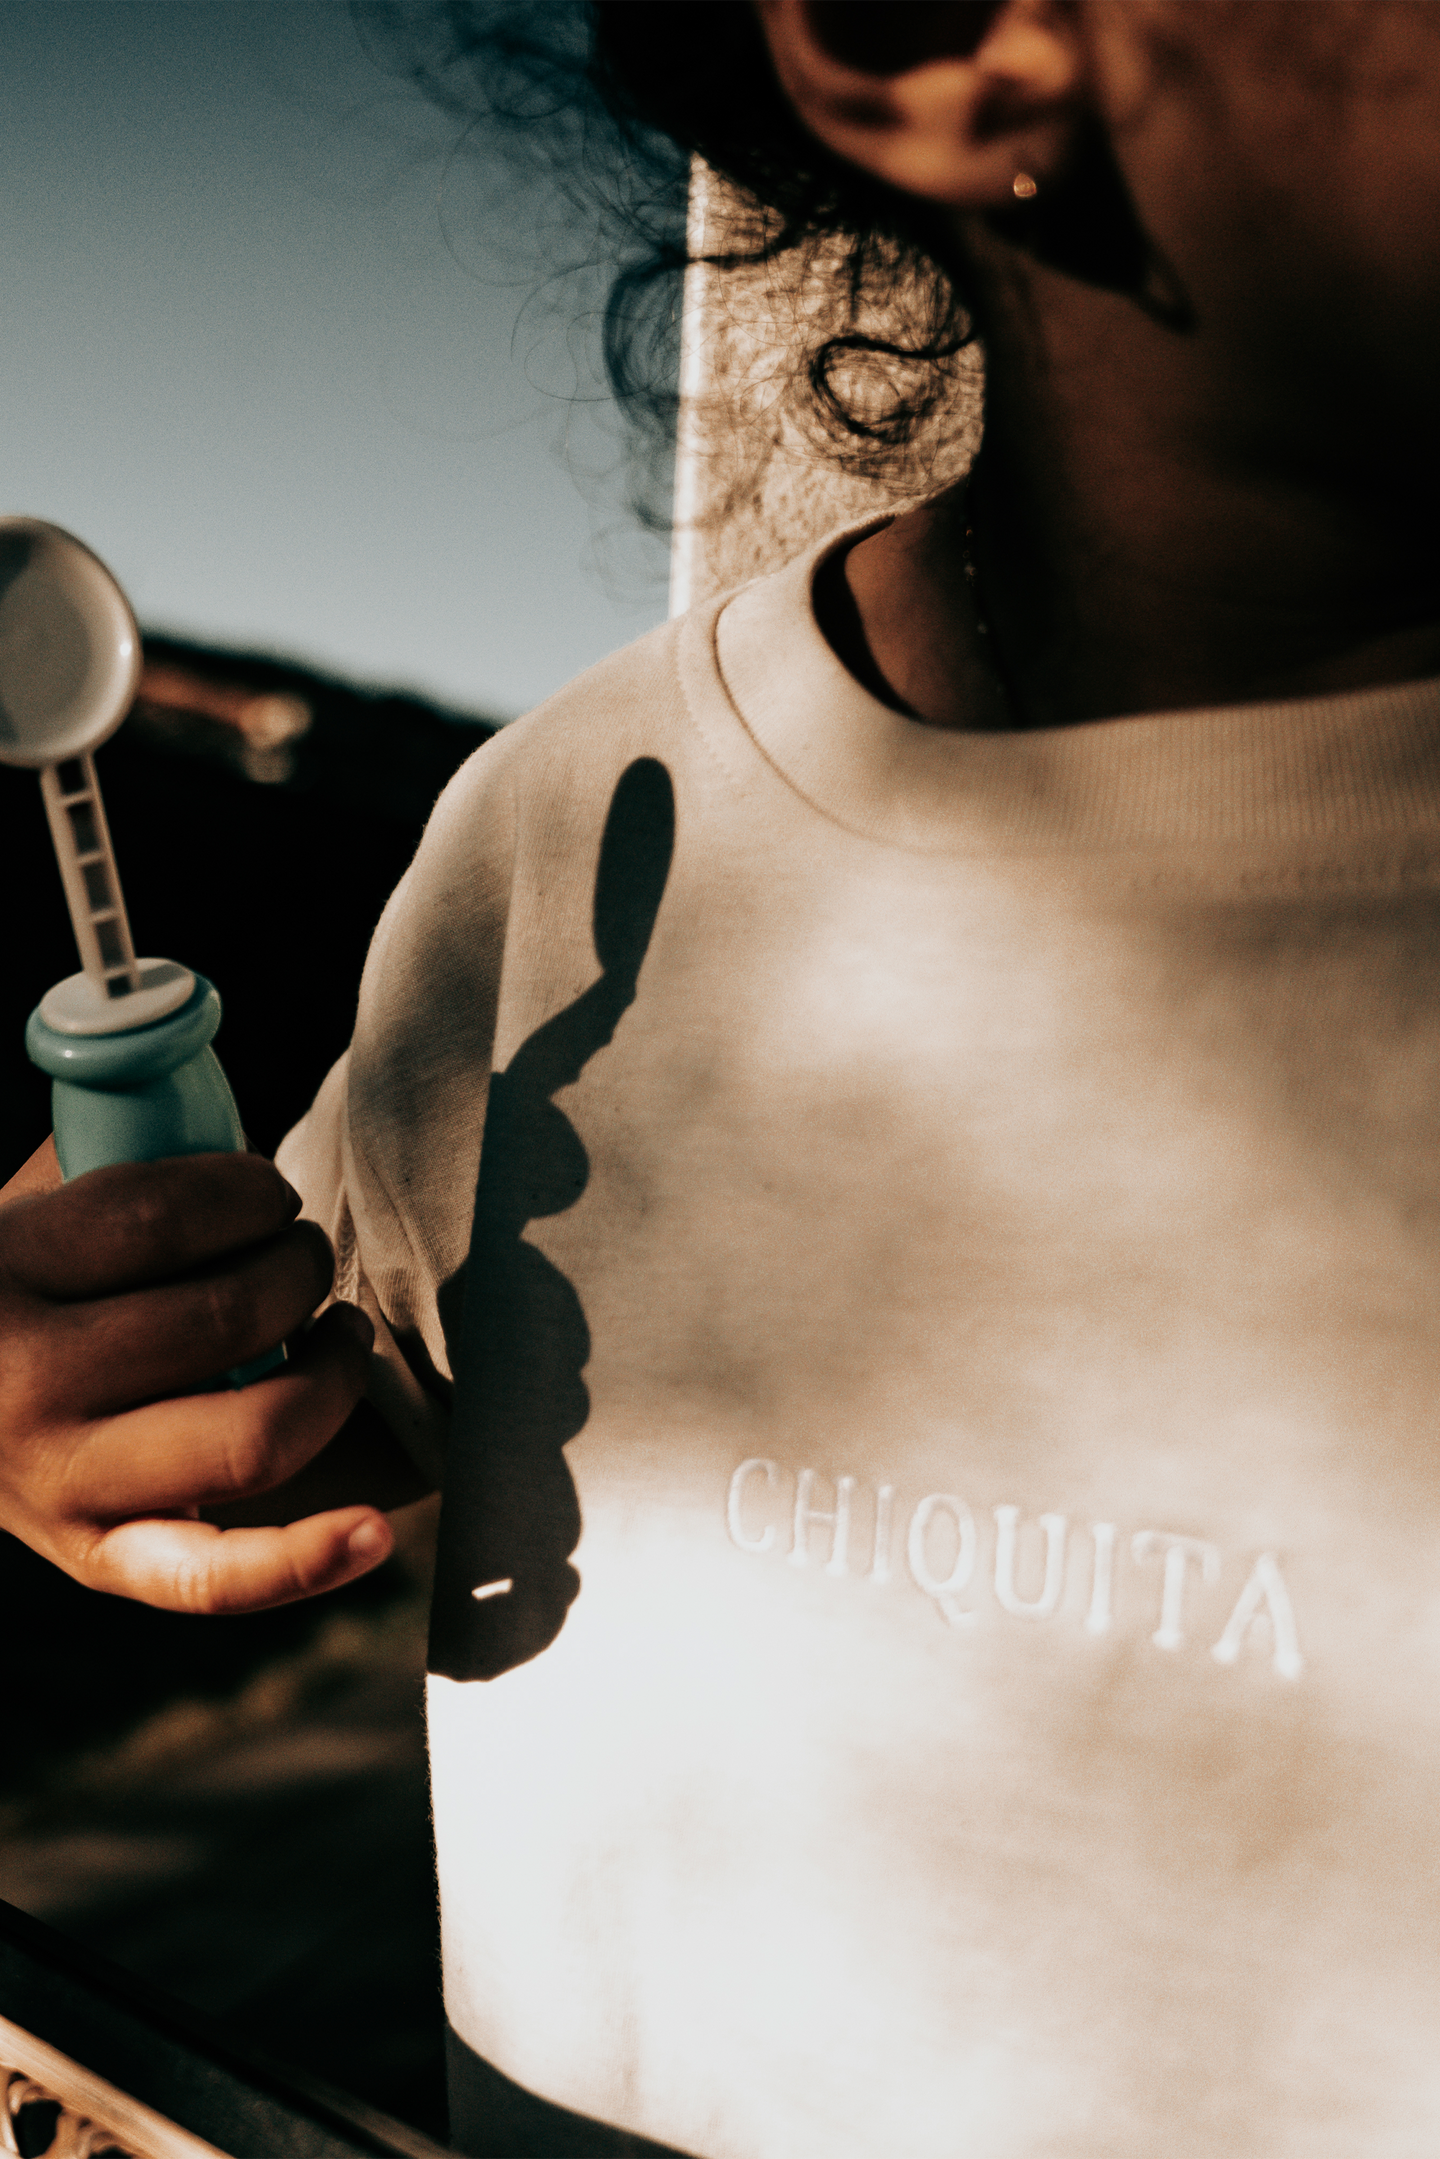 Gros plan sur le t-shirt petite fille brodé "Chiquita".